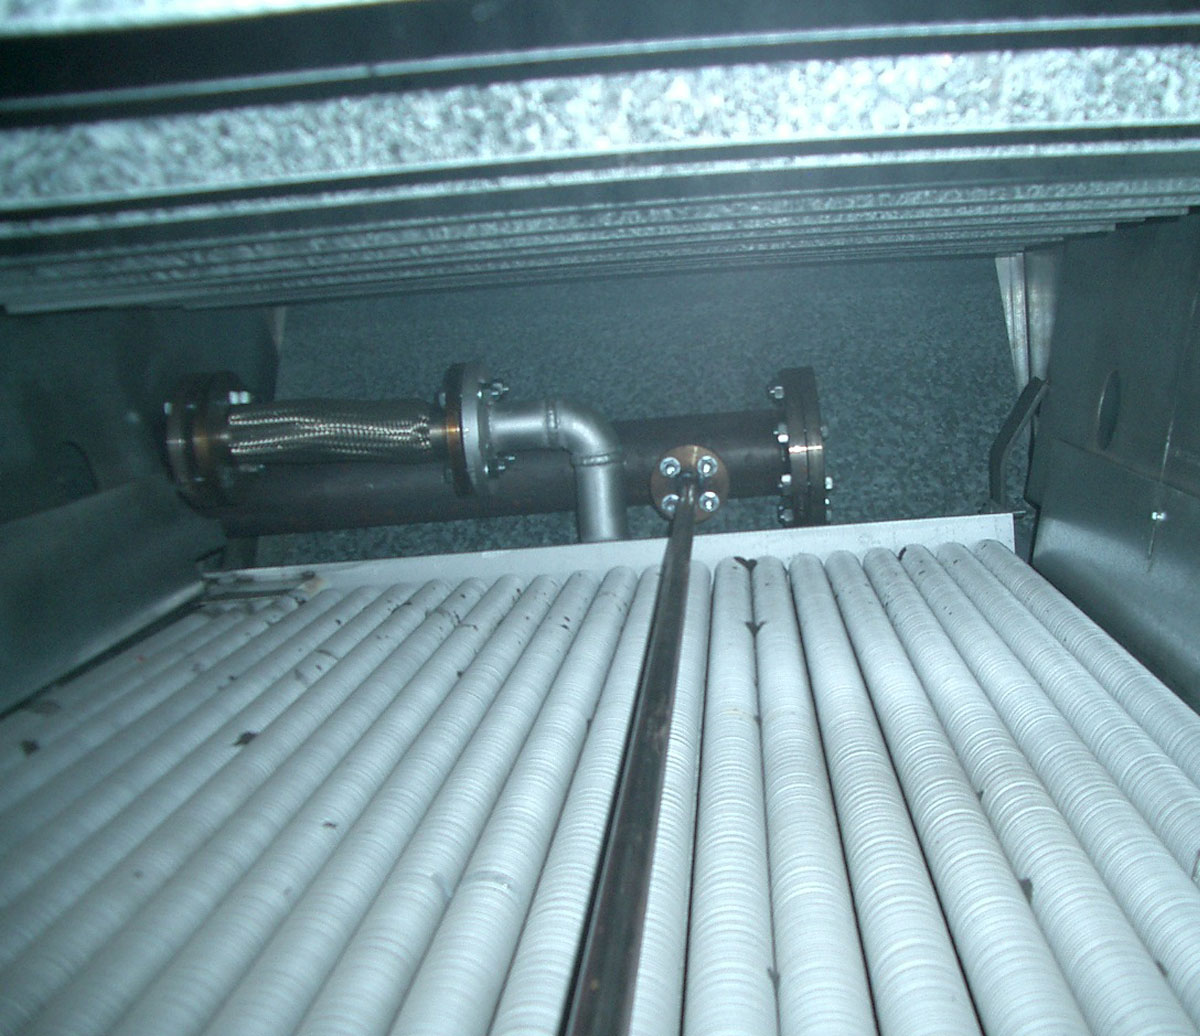 Fabricacion radiador irpen 3 - BATERIA DE TUBO ALETEADO EN ACERO INOXIDABLE 1.4404 (316L)